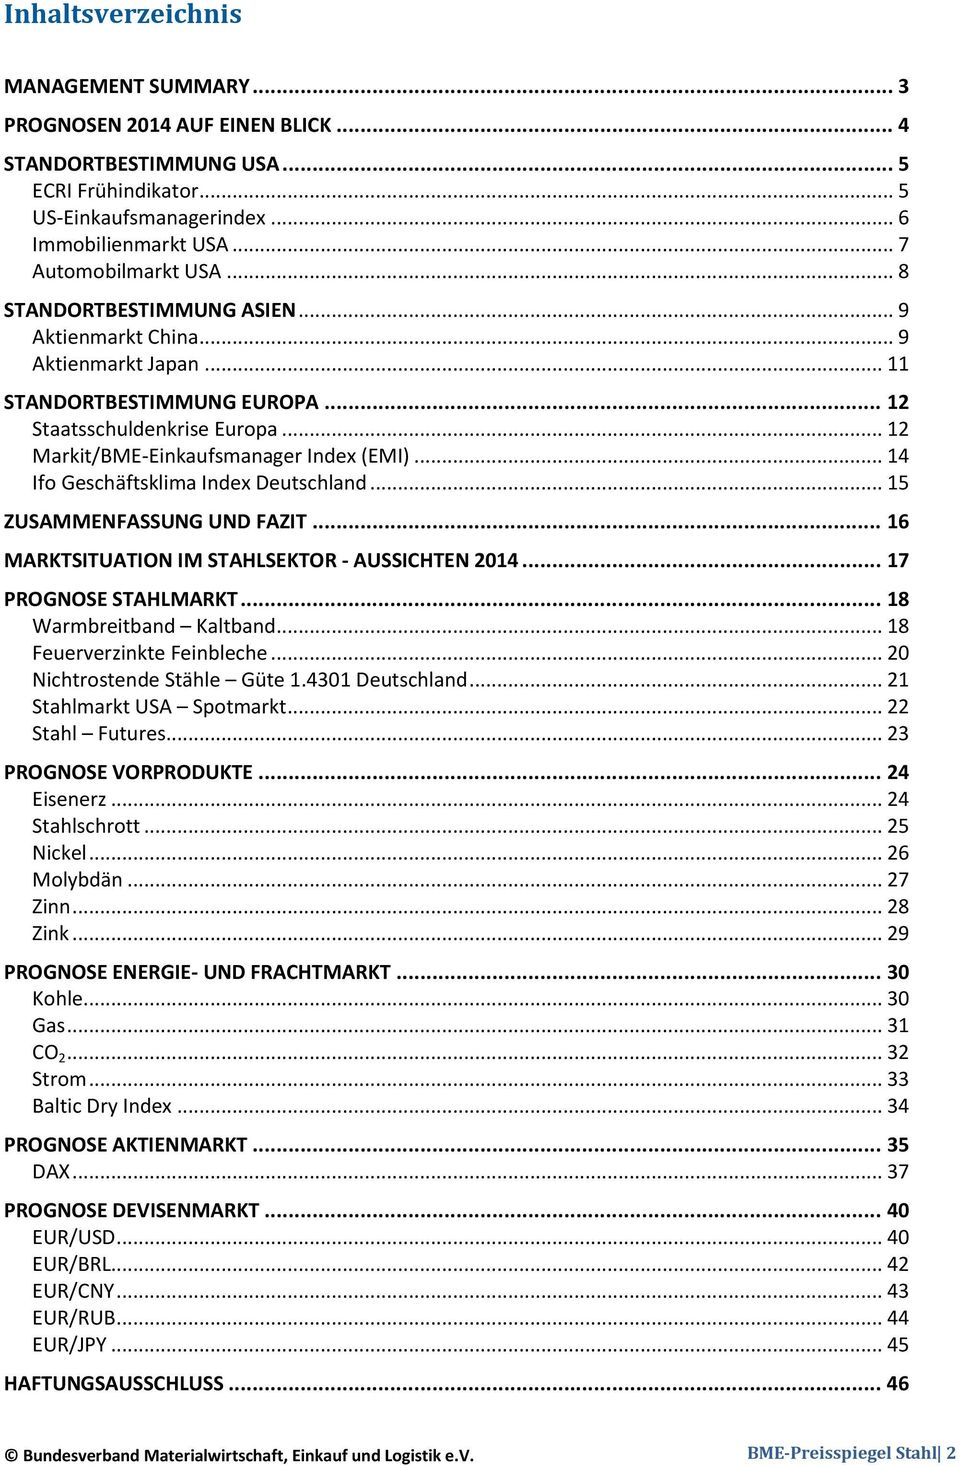 .. 12 Markit/BME-Einkaufsmanager Index (EMI)... 14 Ifo Geschäftsklima Index Deutschland... 15 ZUSAMMENFASSUNG UND FAZIT... 16 MARKTSITUATION IM STAHLSEKTOR - AUSSICHTEN 2014... 17 PROGNOSE STAHLMARKT.